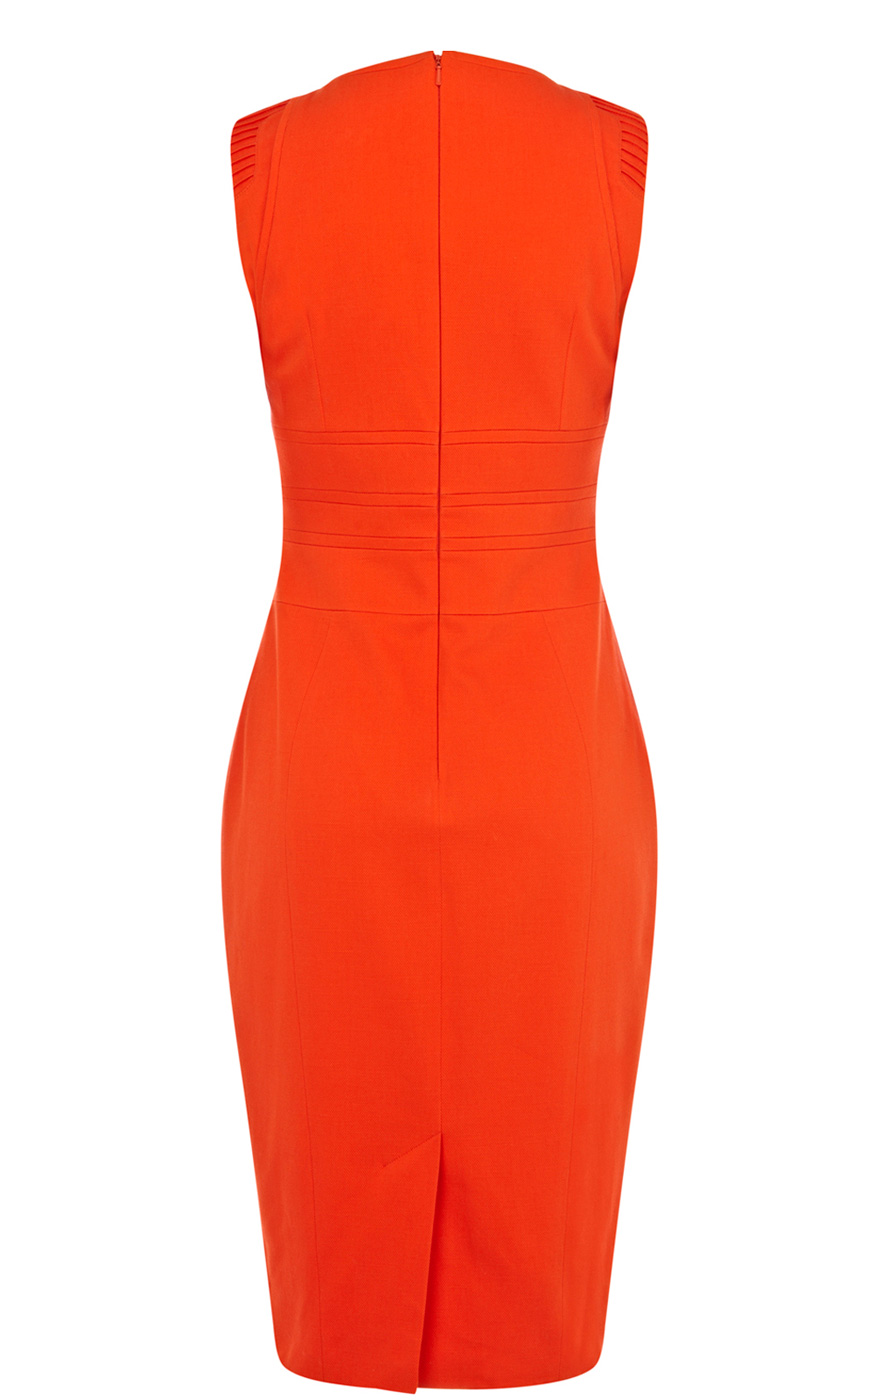 Karen millen Tailored Cotton Pencil Dress in Orange | Lyst